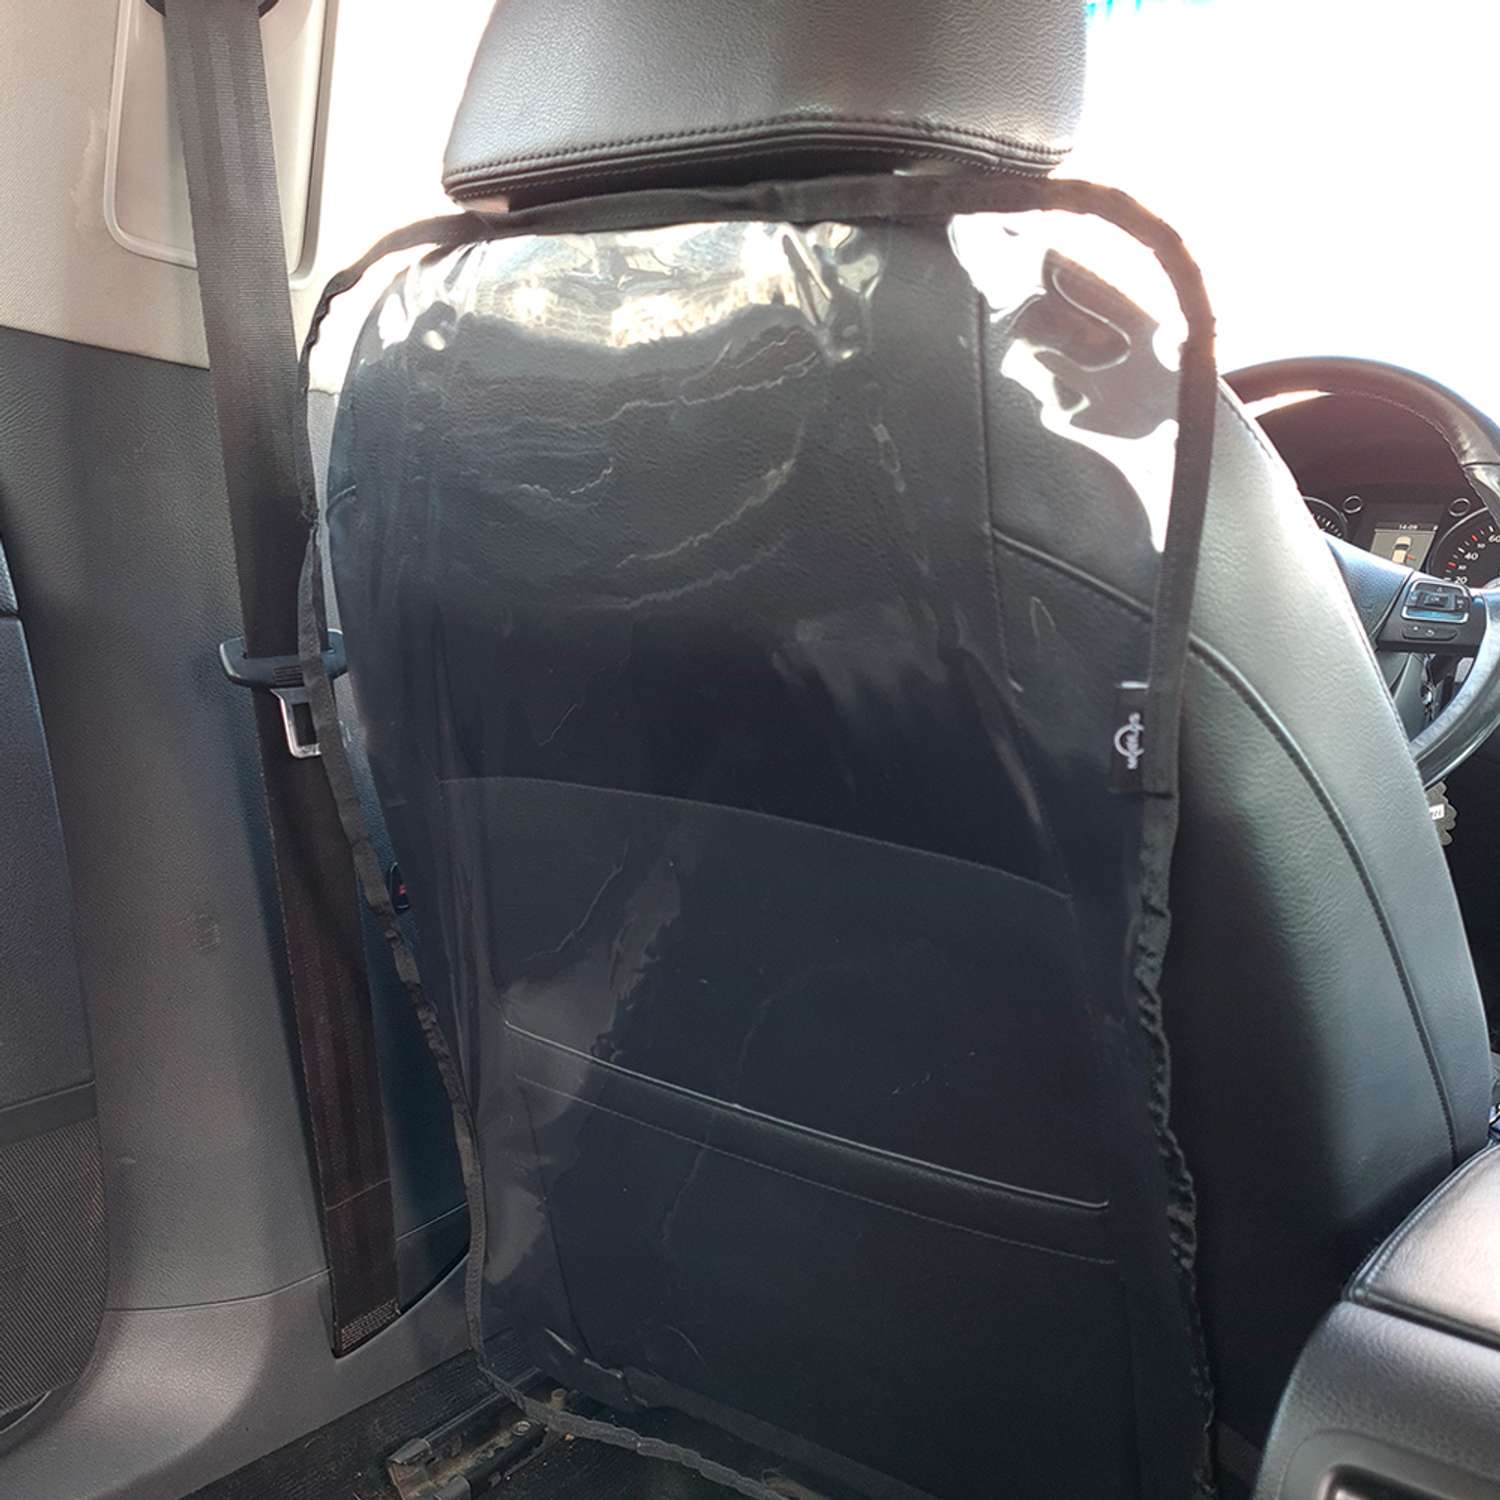 Защитная накидка Mobylos прозрачная защита от детских ног на спинку сиденья автомобиля - фото 7